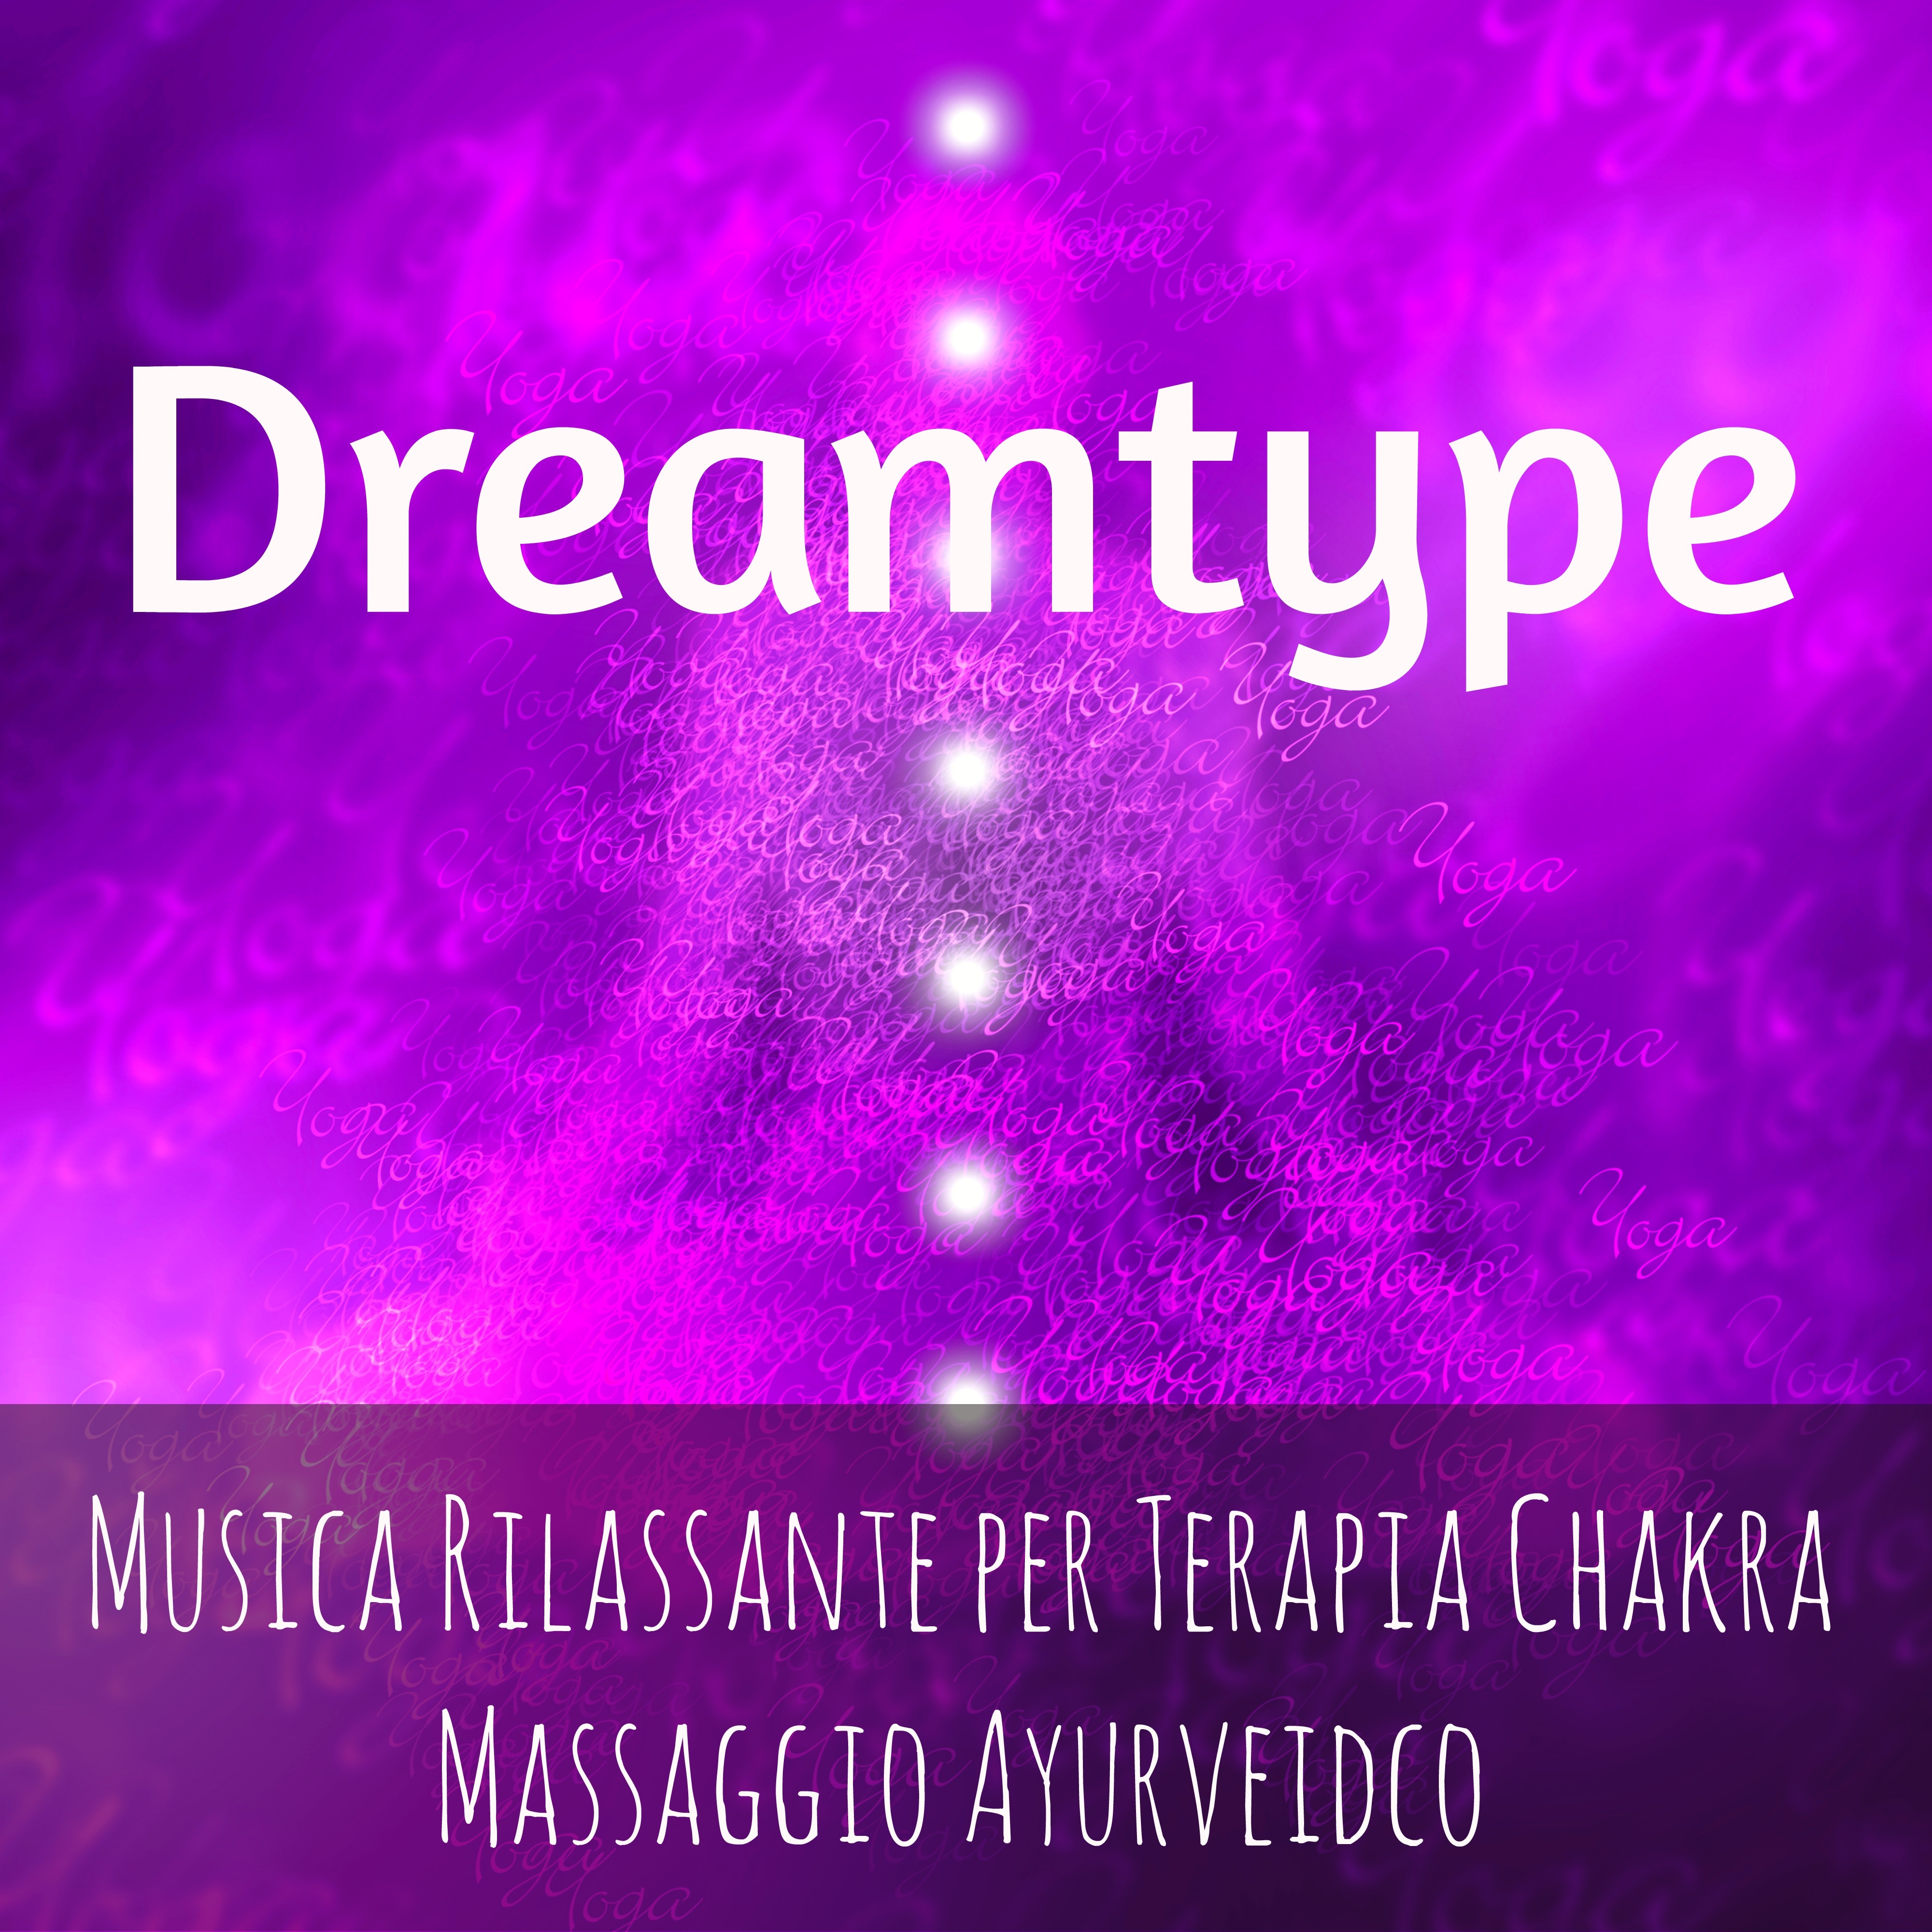 Dreamtype - Musica Rilassante per Tecniche di Rilassamento Terapia Chakra Massaggio Ayurveidco con Suoni Benessere dalla Natura Spirituali e Strumentali